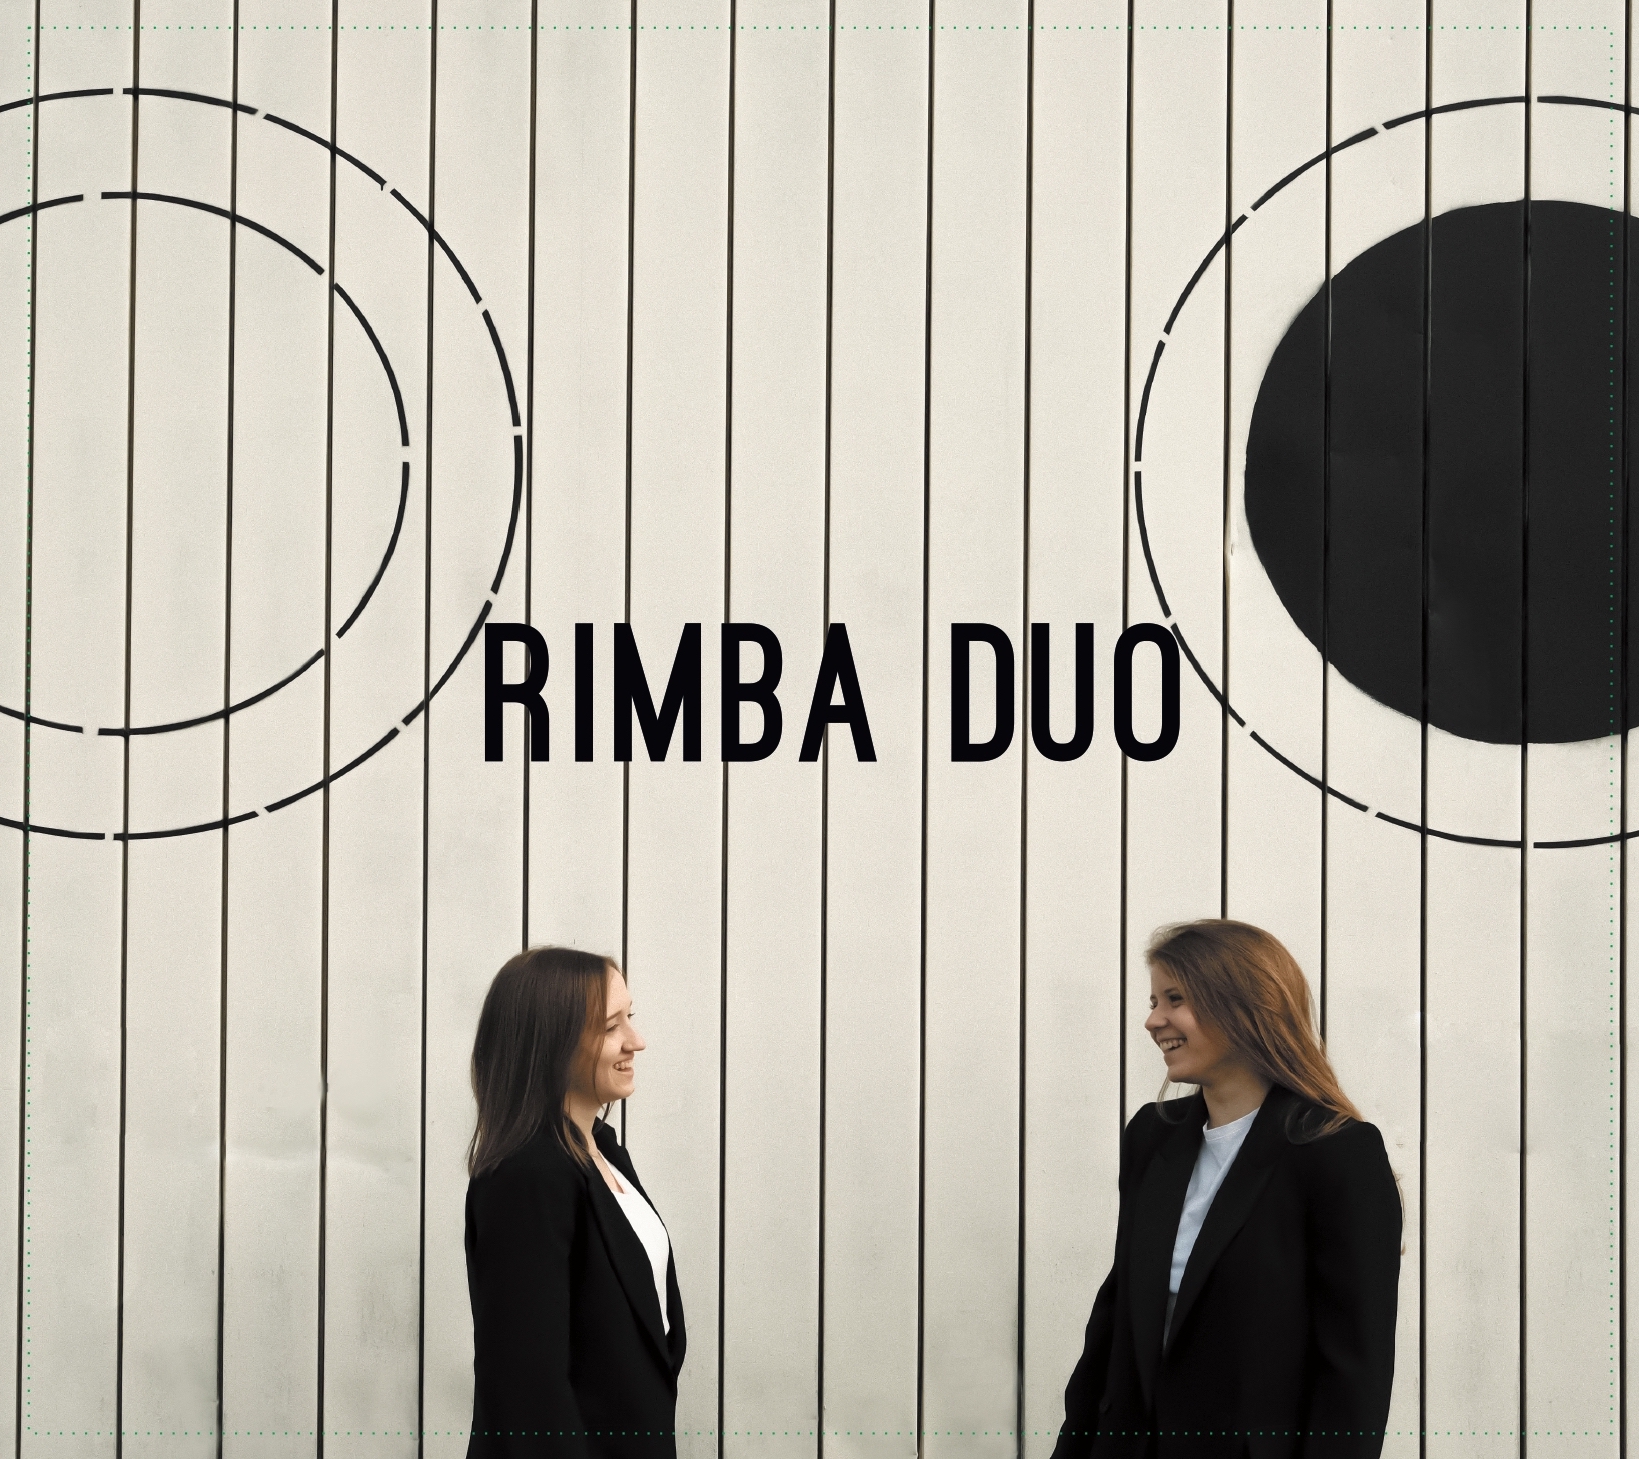 Rimba Duo